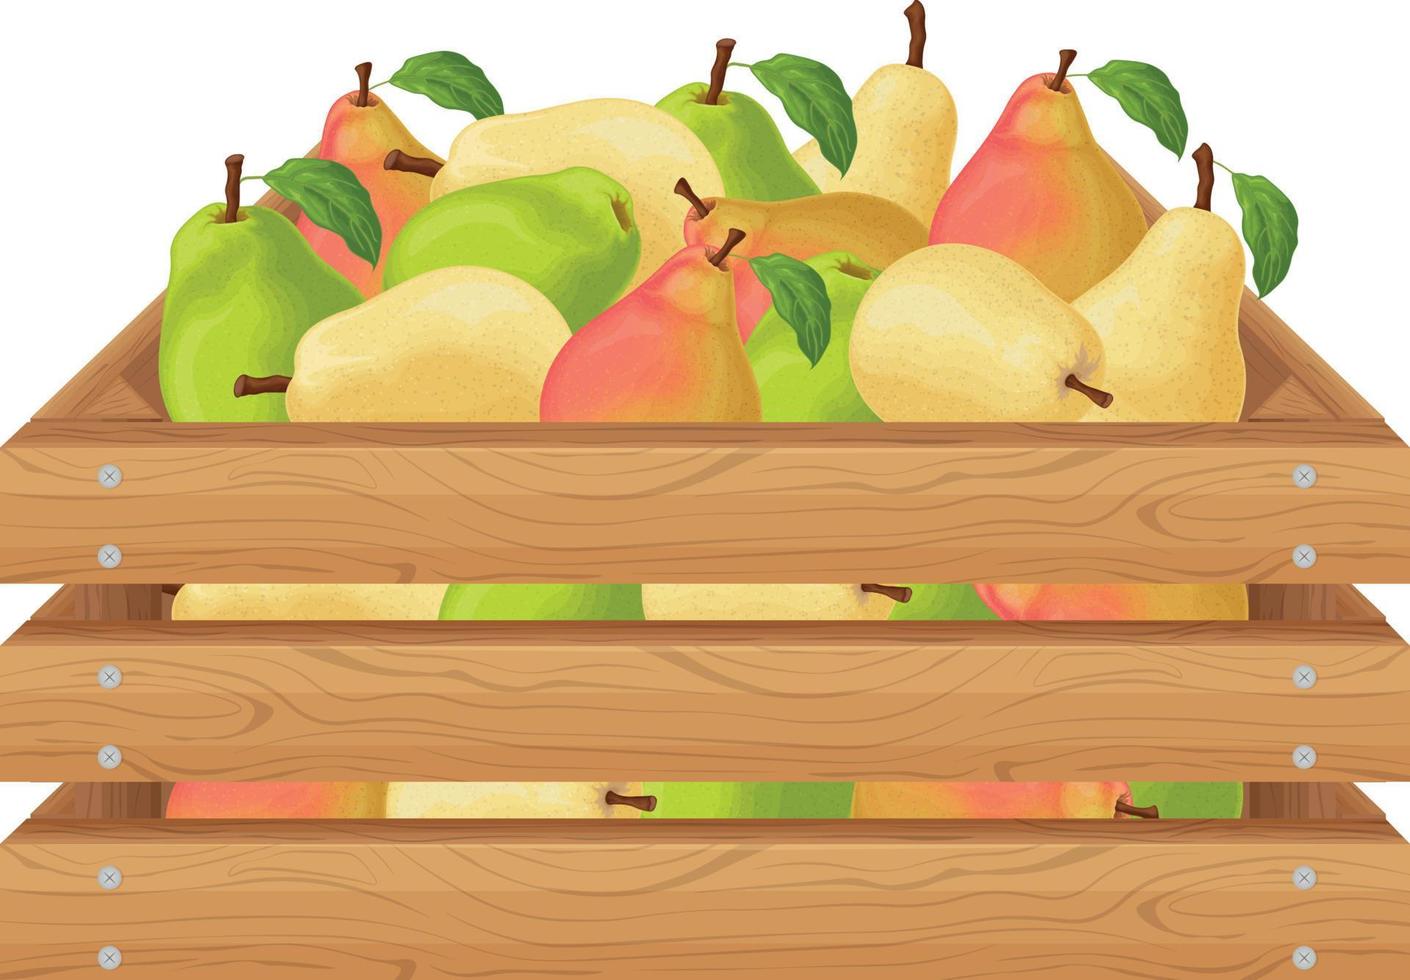 peras. caja de madera con peras. frutas de pera maduras en una caja. frutas frescas del jardín. peras jugosas en una caja de madera. ilustración vectorial aislada en un fondo blanco vector